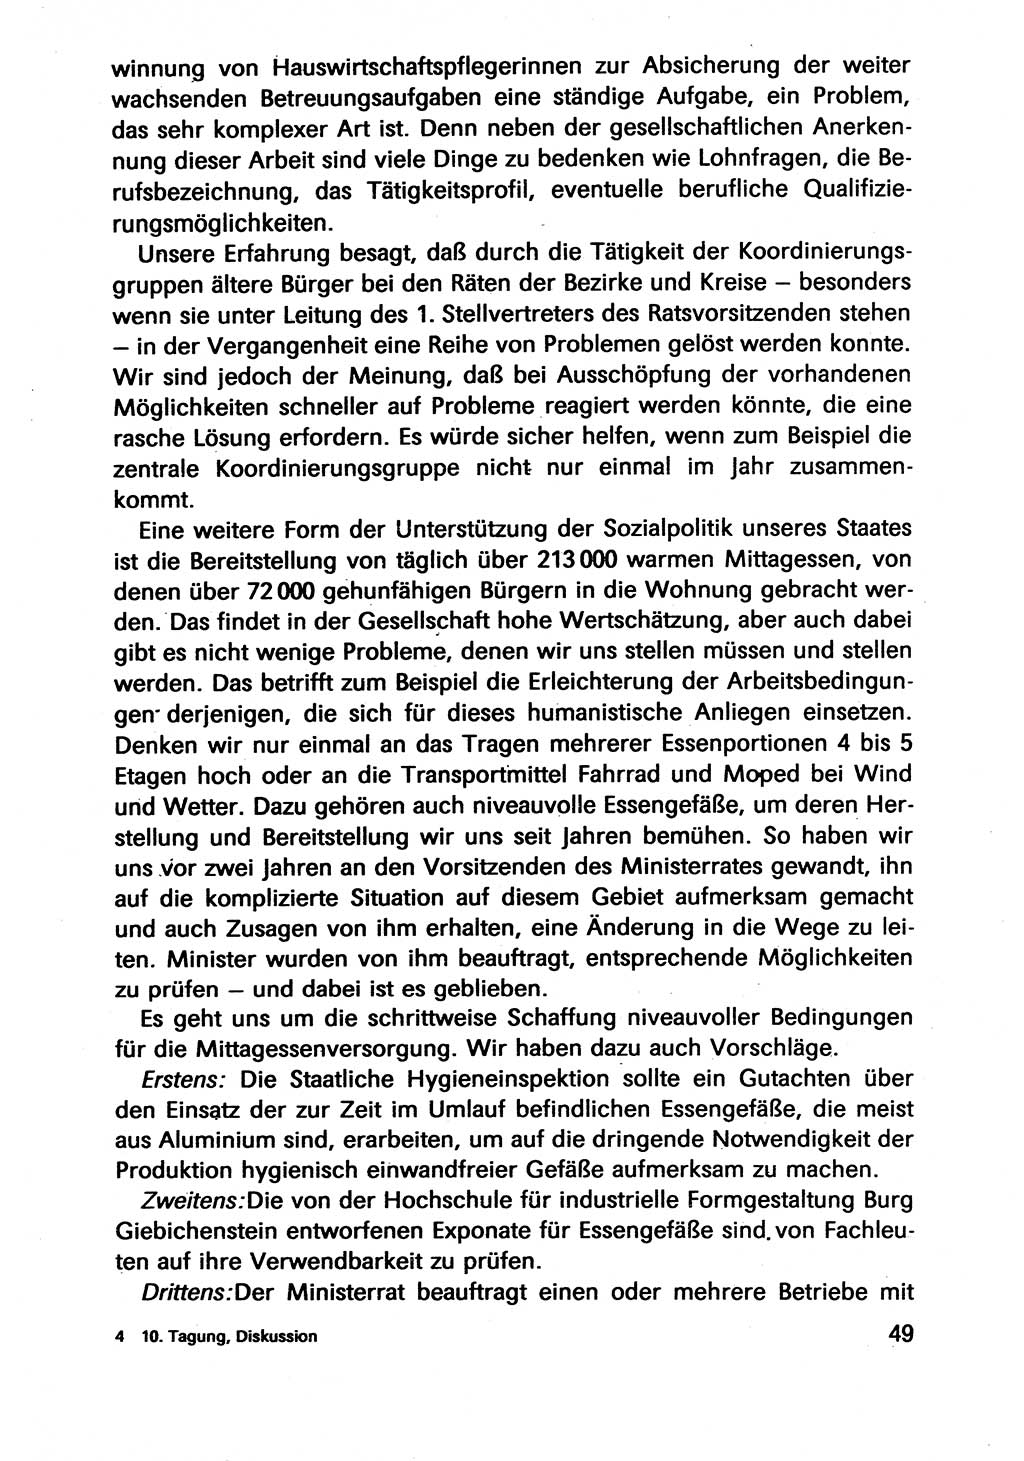 Diskussionsbeiträge, 10. Tagung des ZK (Zentralkomitee) der SED (Sozialistische Einheitspartei Deutschlands) [Deutsche Demokratische Republik (DDR)] 1989, Seite 49 (Disk.-Beitr. 10. Tg. ZK SED DDR 1989, S. 49)